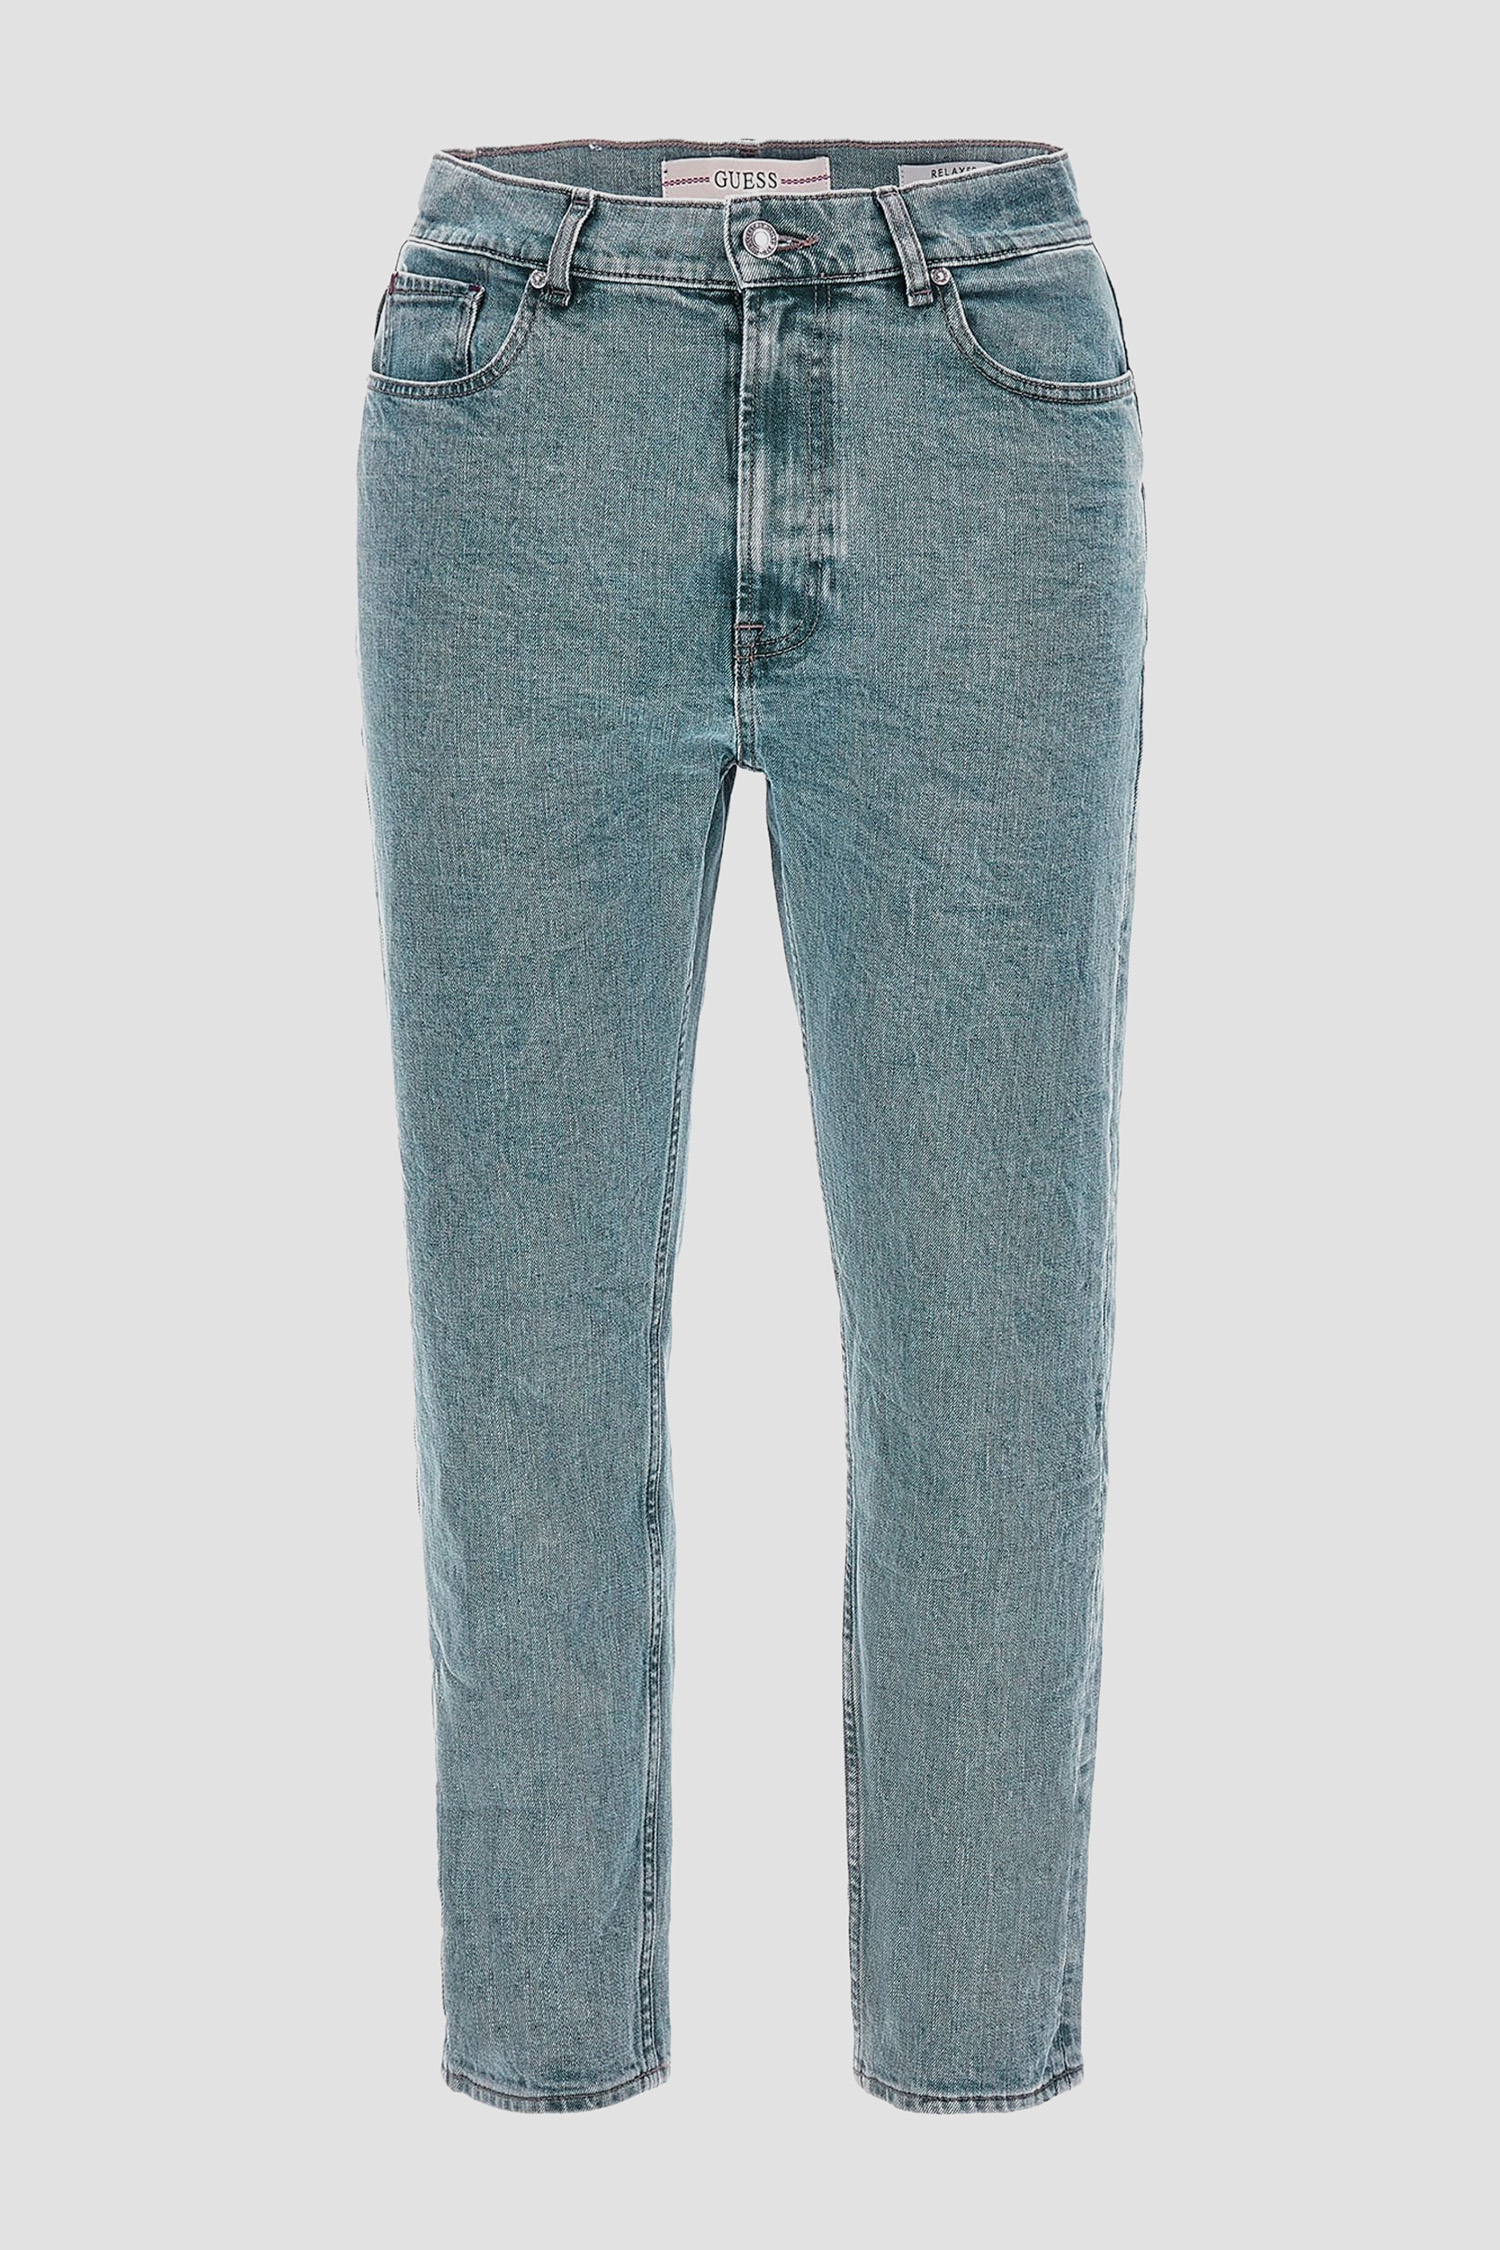 Мужские синие джинсы Guess M3RA14.D4WO1;CLG1